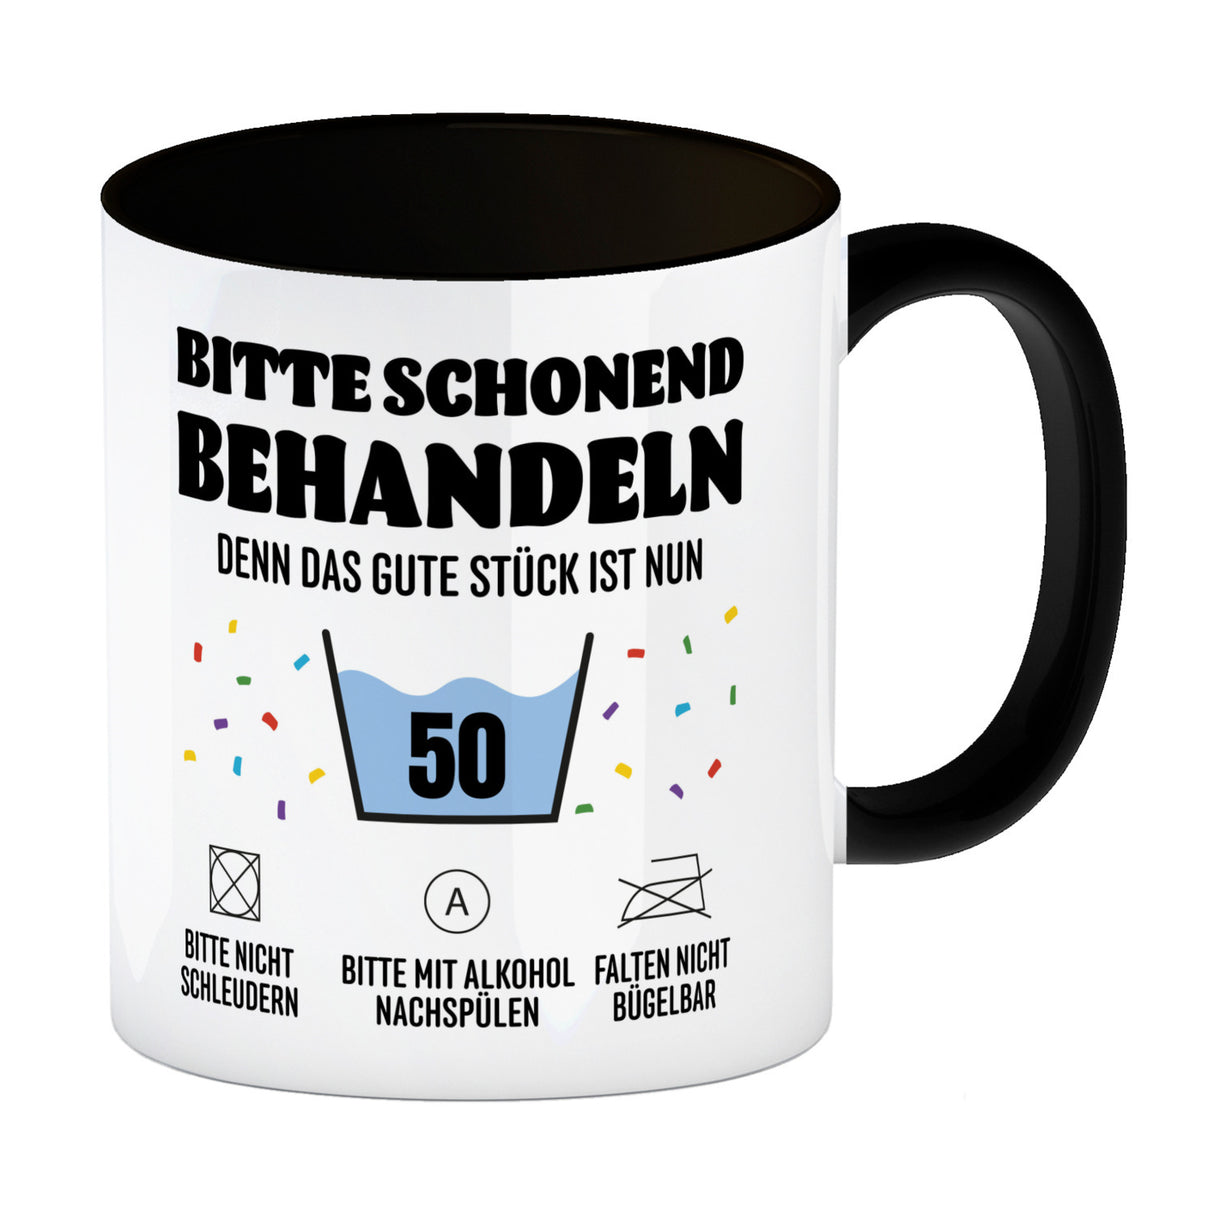 Bitte schonend behandeln - 50. Geburtstag Kaffeebecher